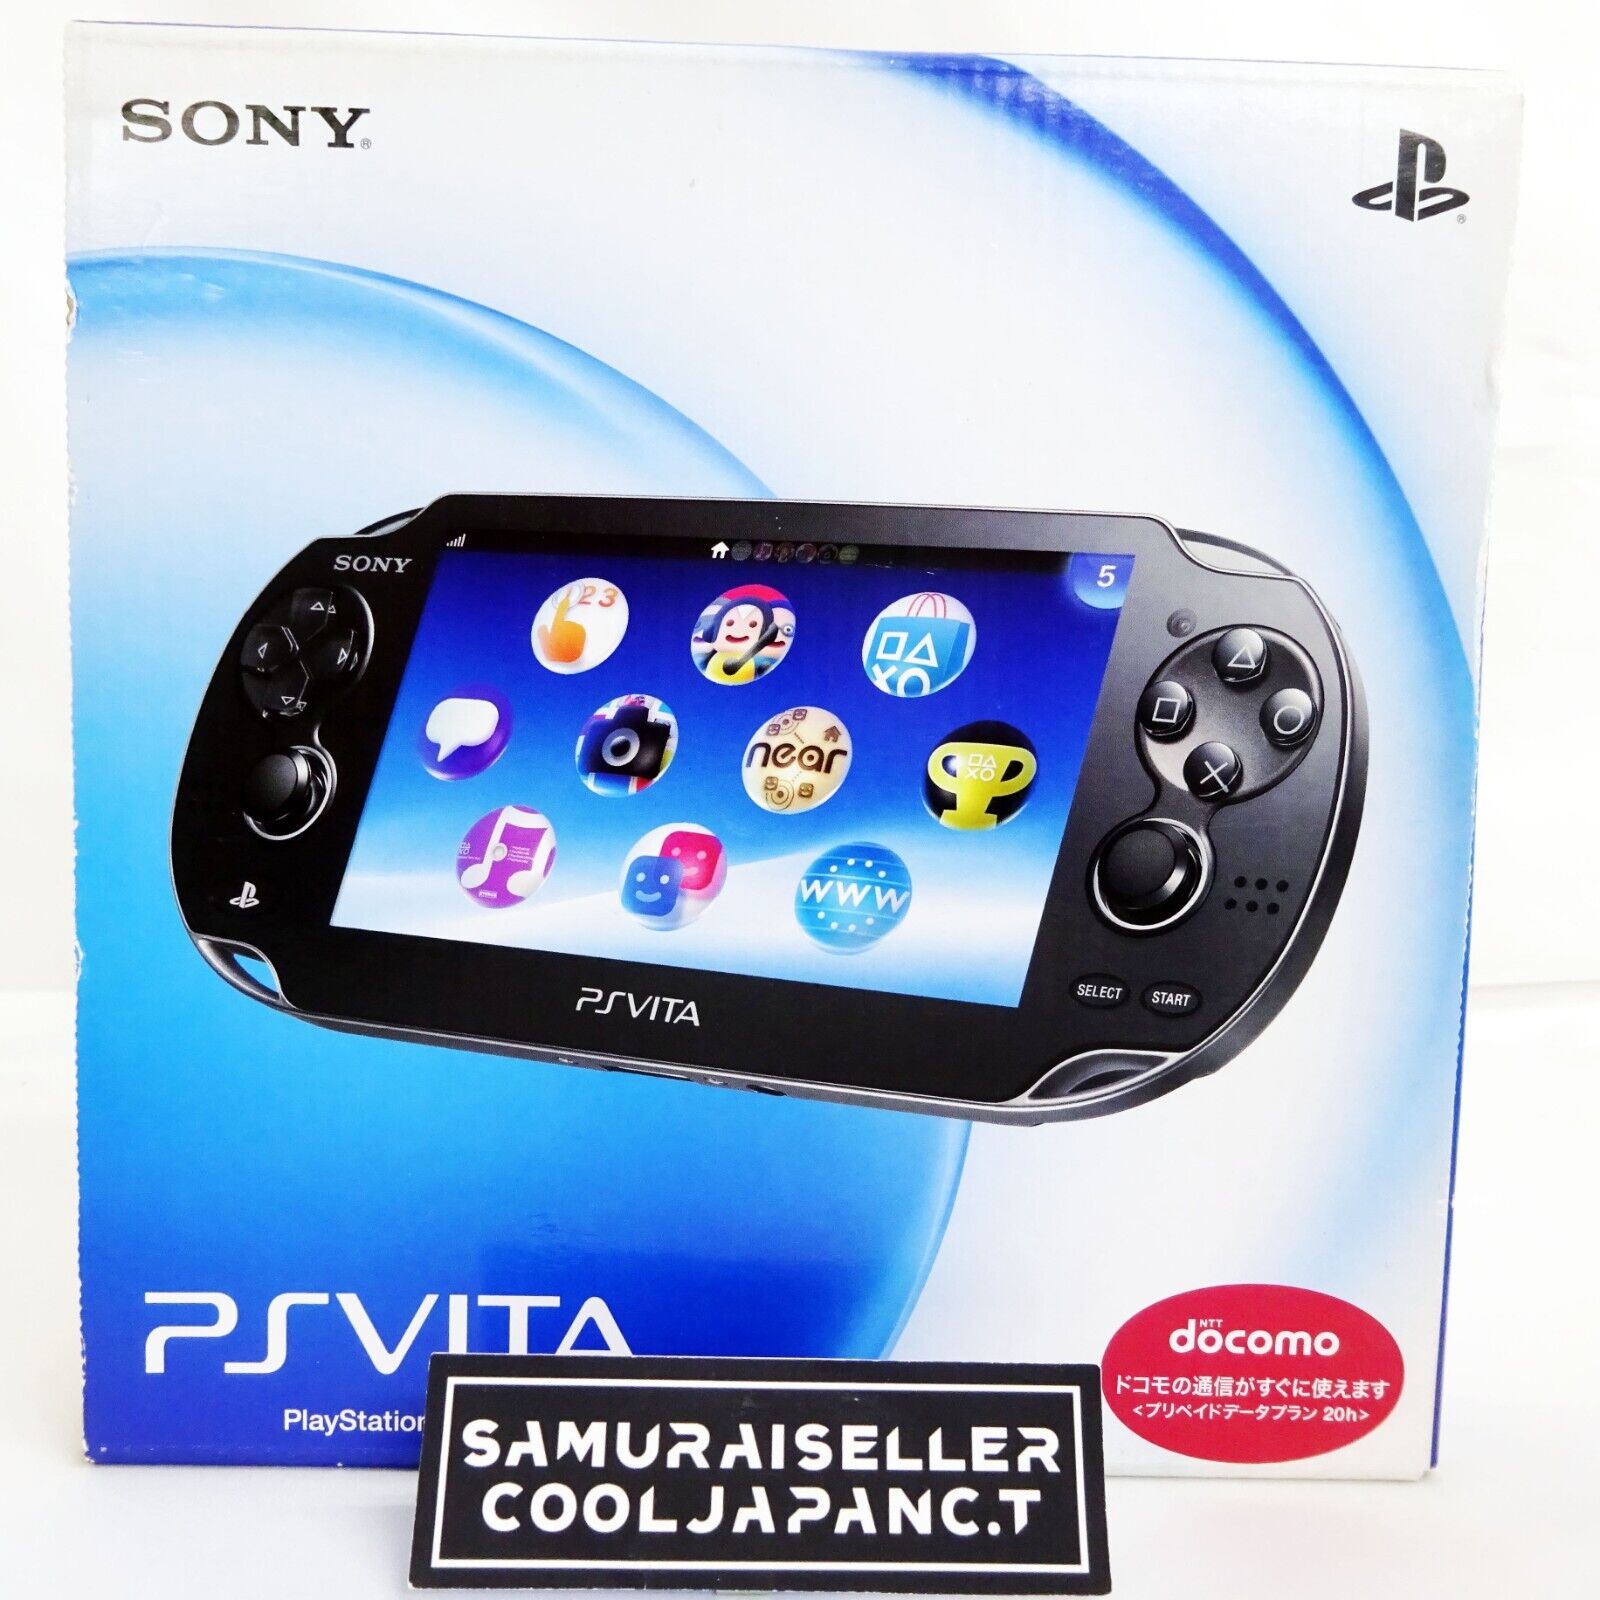 SONY PlayStation Vita 3G / Wi-Fi Model Crystal Black Limited (PCH-1100AB01)  NEW | eBay